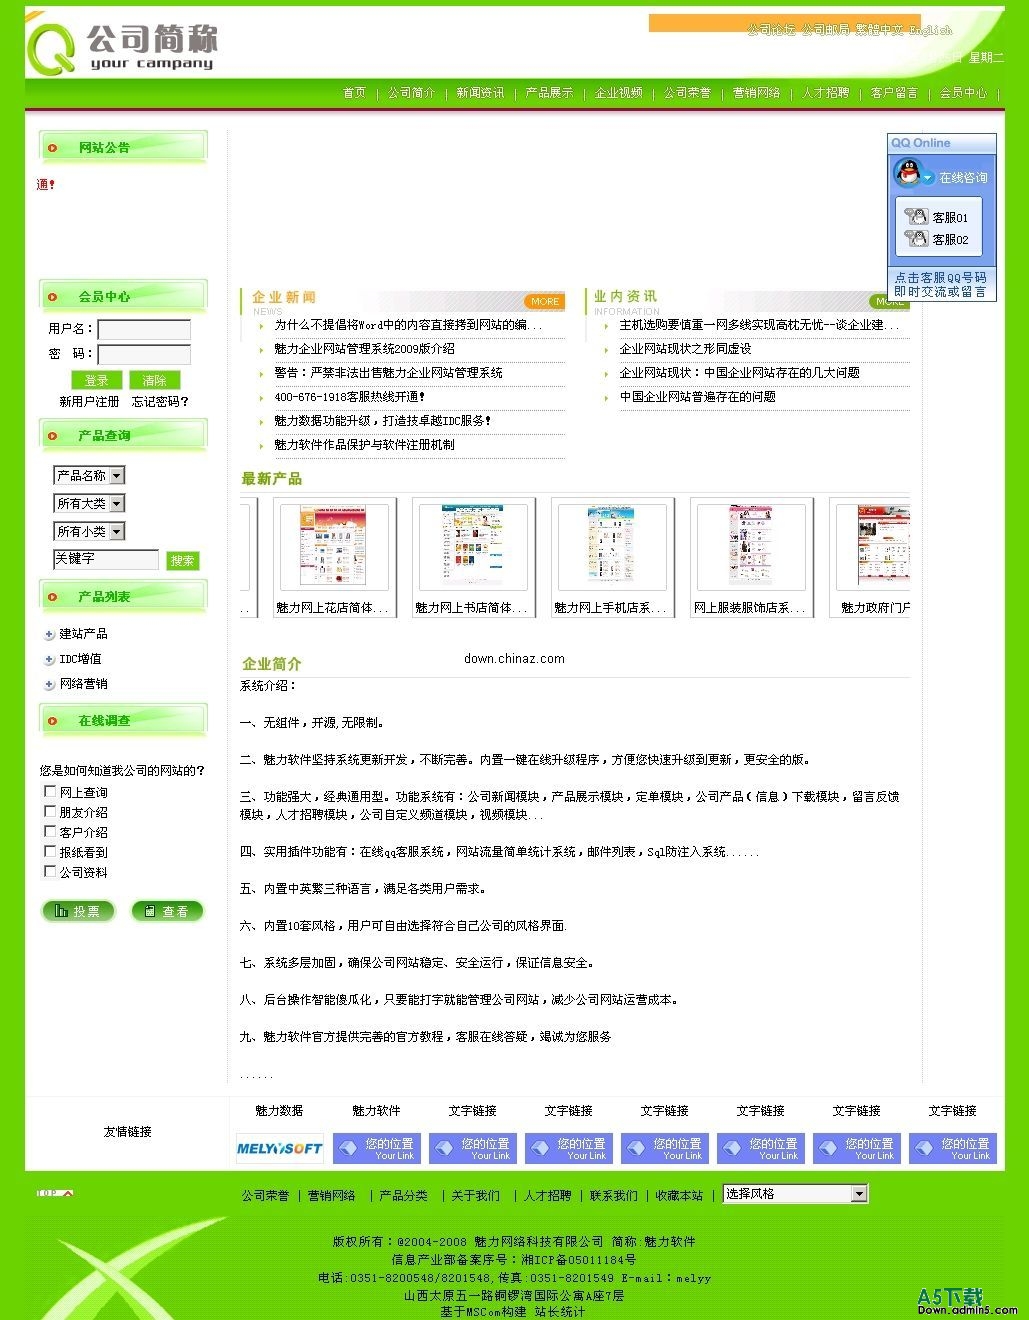 魅力企业网站管理系统 v2009 Sp6